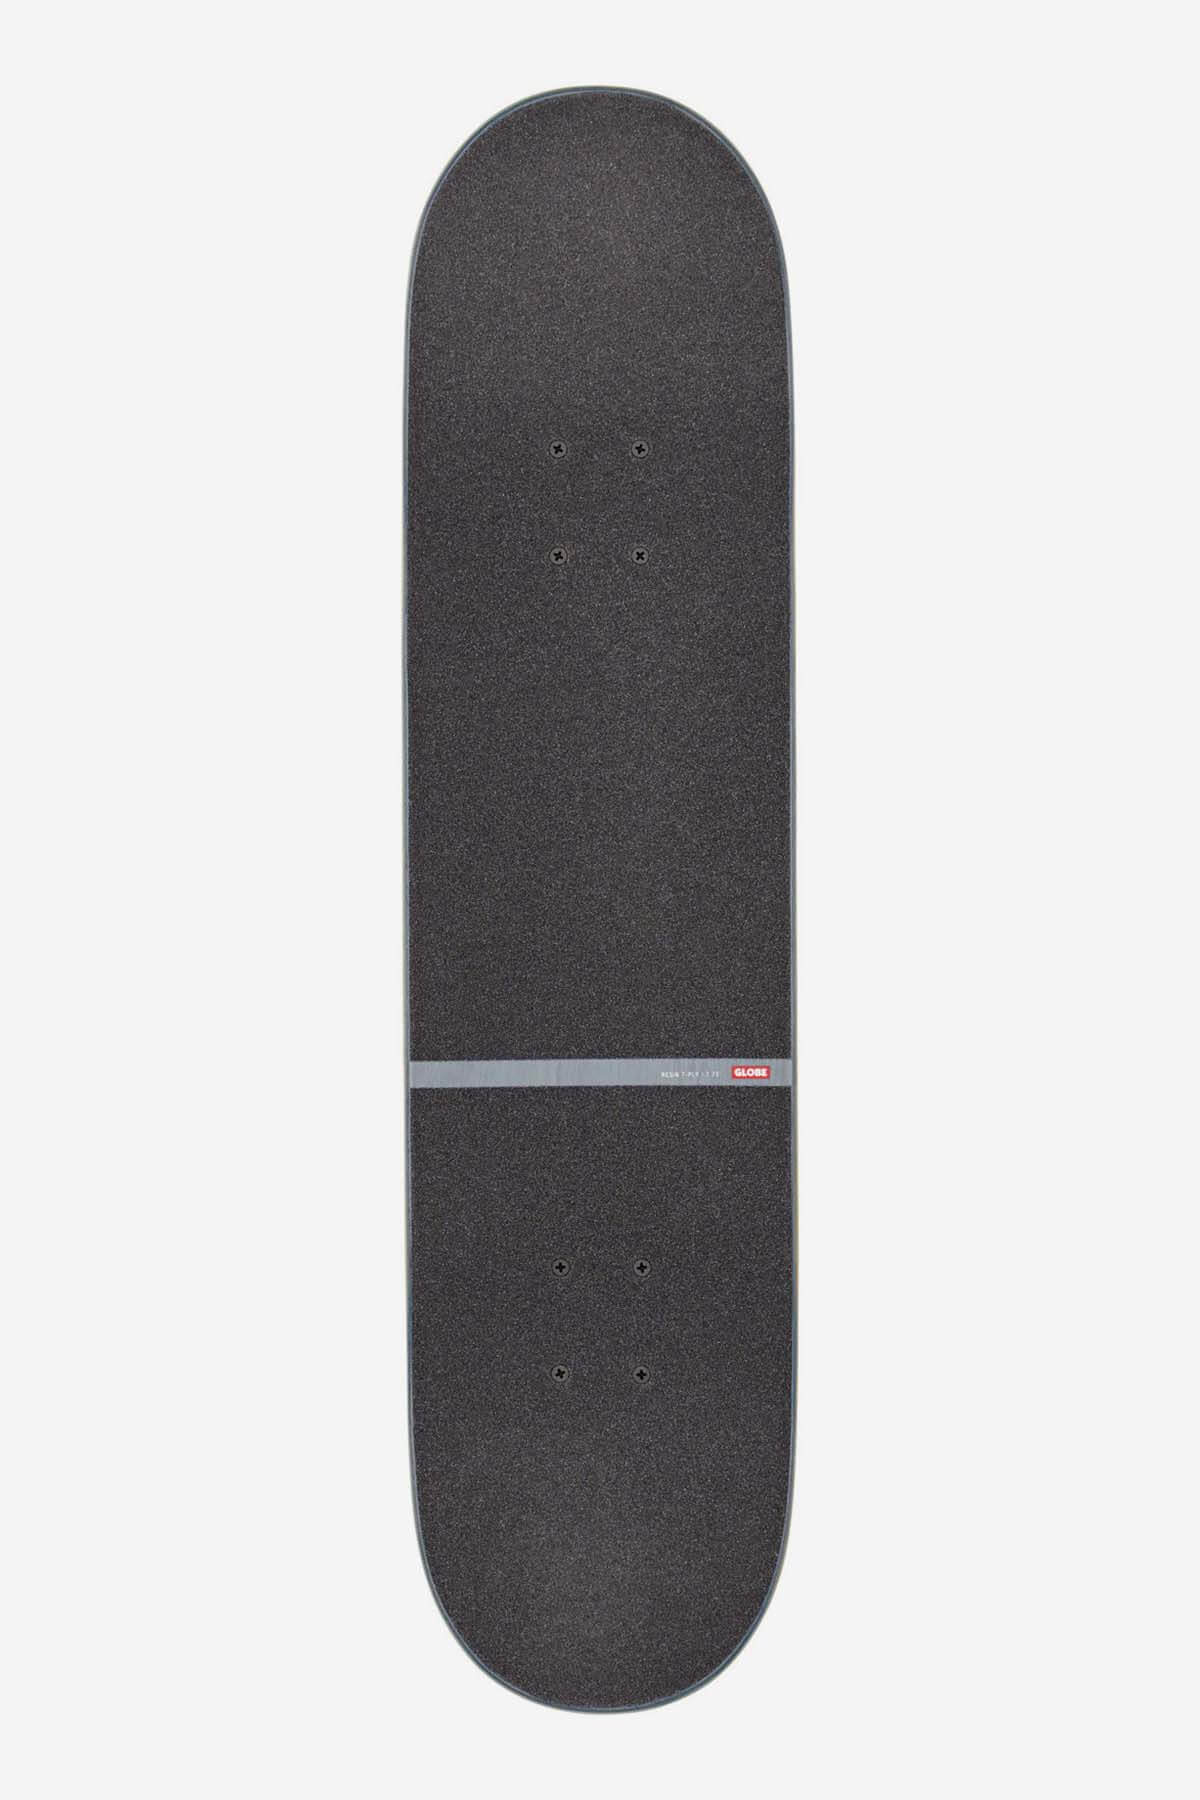 Globe - G1 D Stack- Blue/Naranja - 7.75" Completo Skateboard